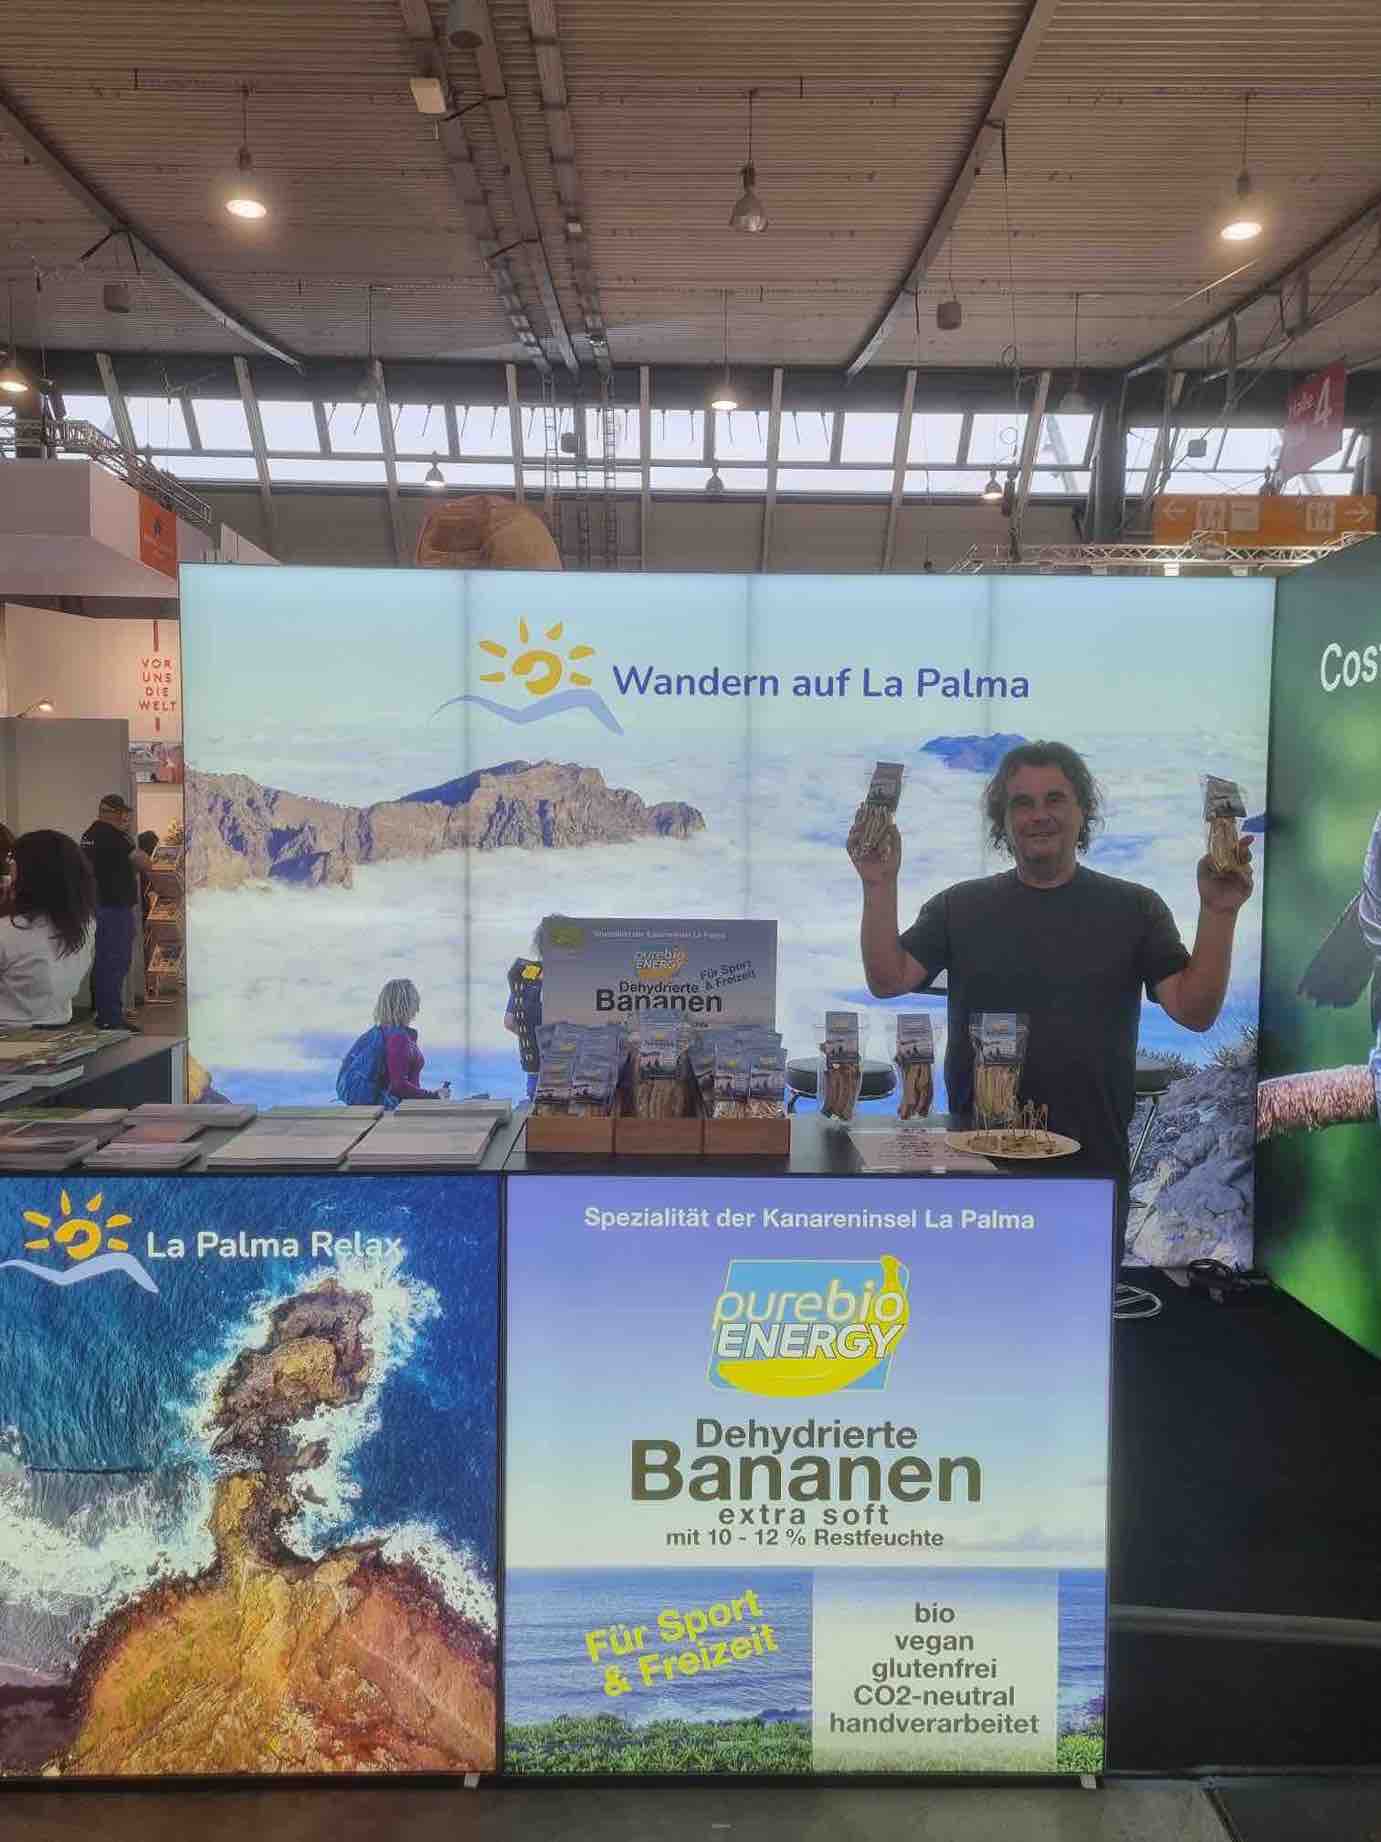 La Palma Travel utiliza plátanos ecológicos  deshidratados para promocionar la isla en la mayor feria de turismo de Alemania